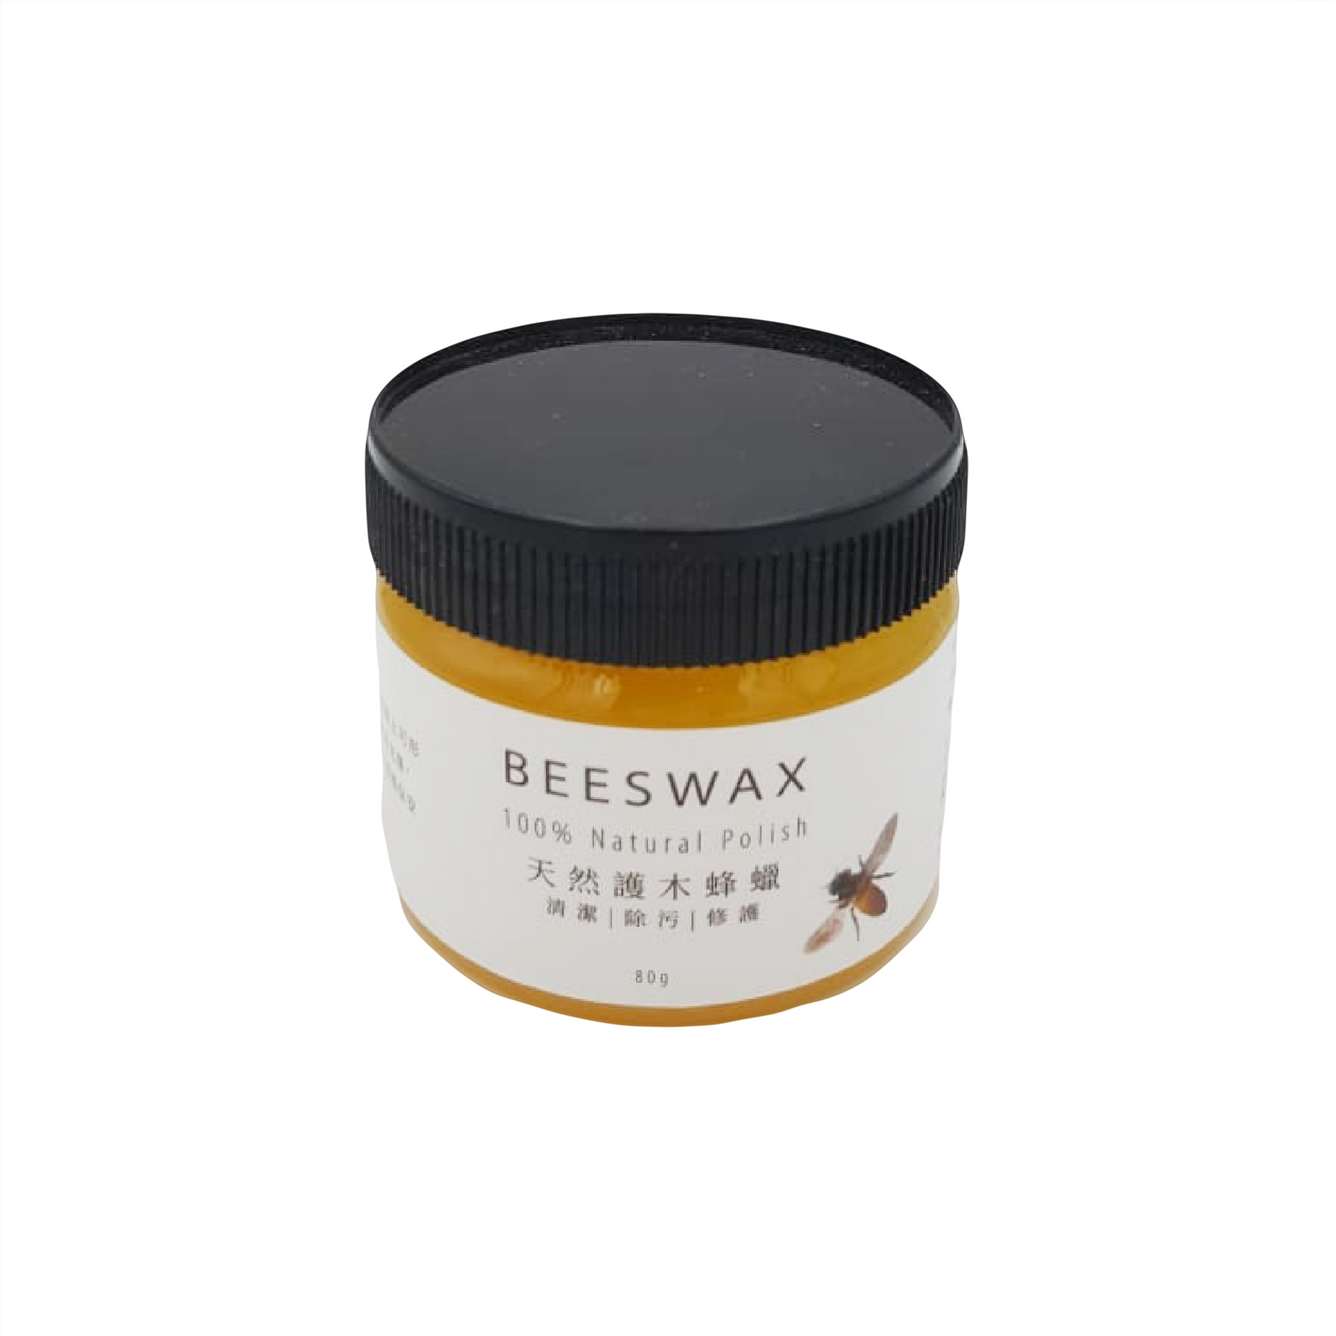 Beeswax 100% Natural Polish